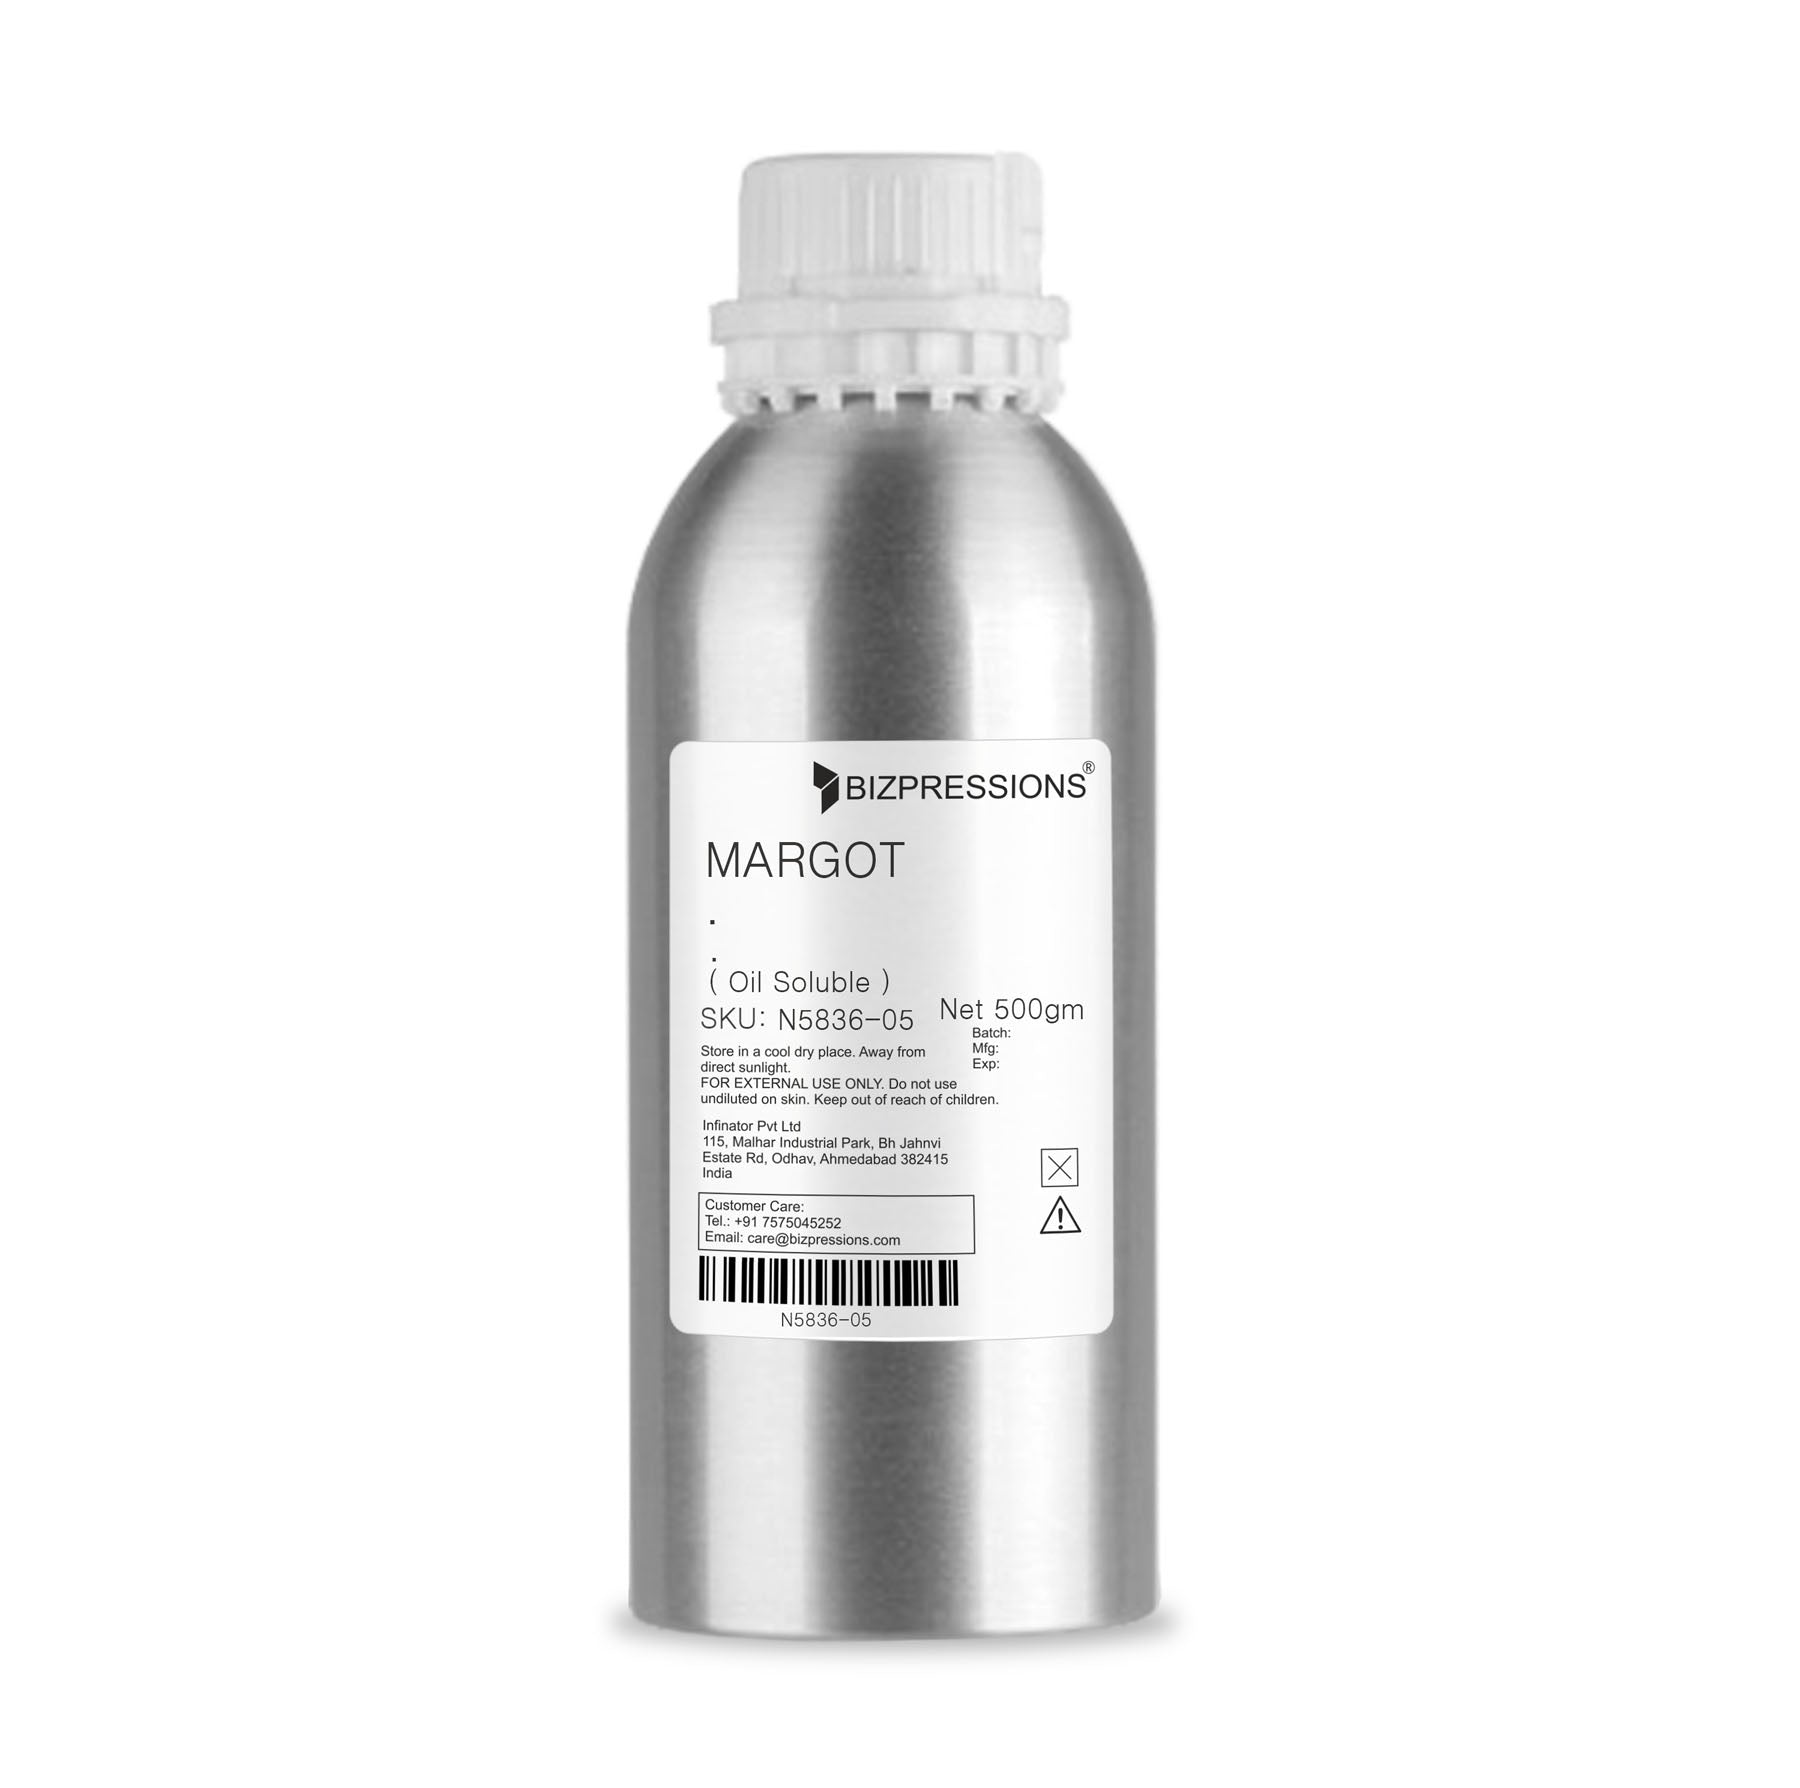 MARGOT - Fragrance ( Oil Soluble ) - 500 gm